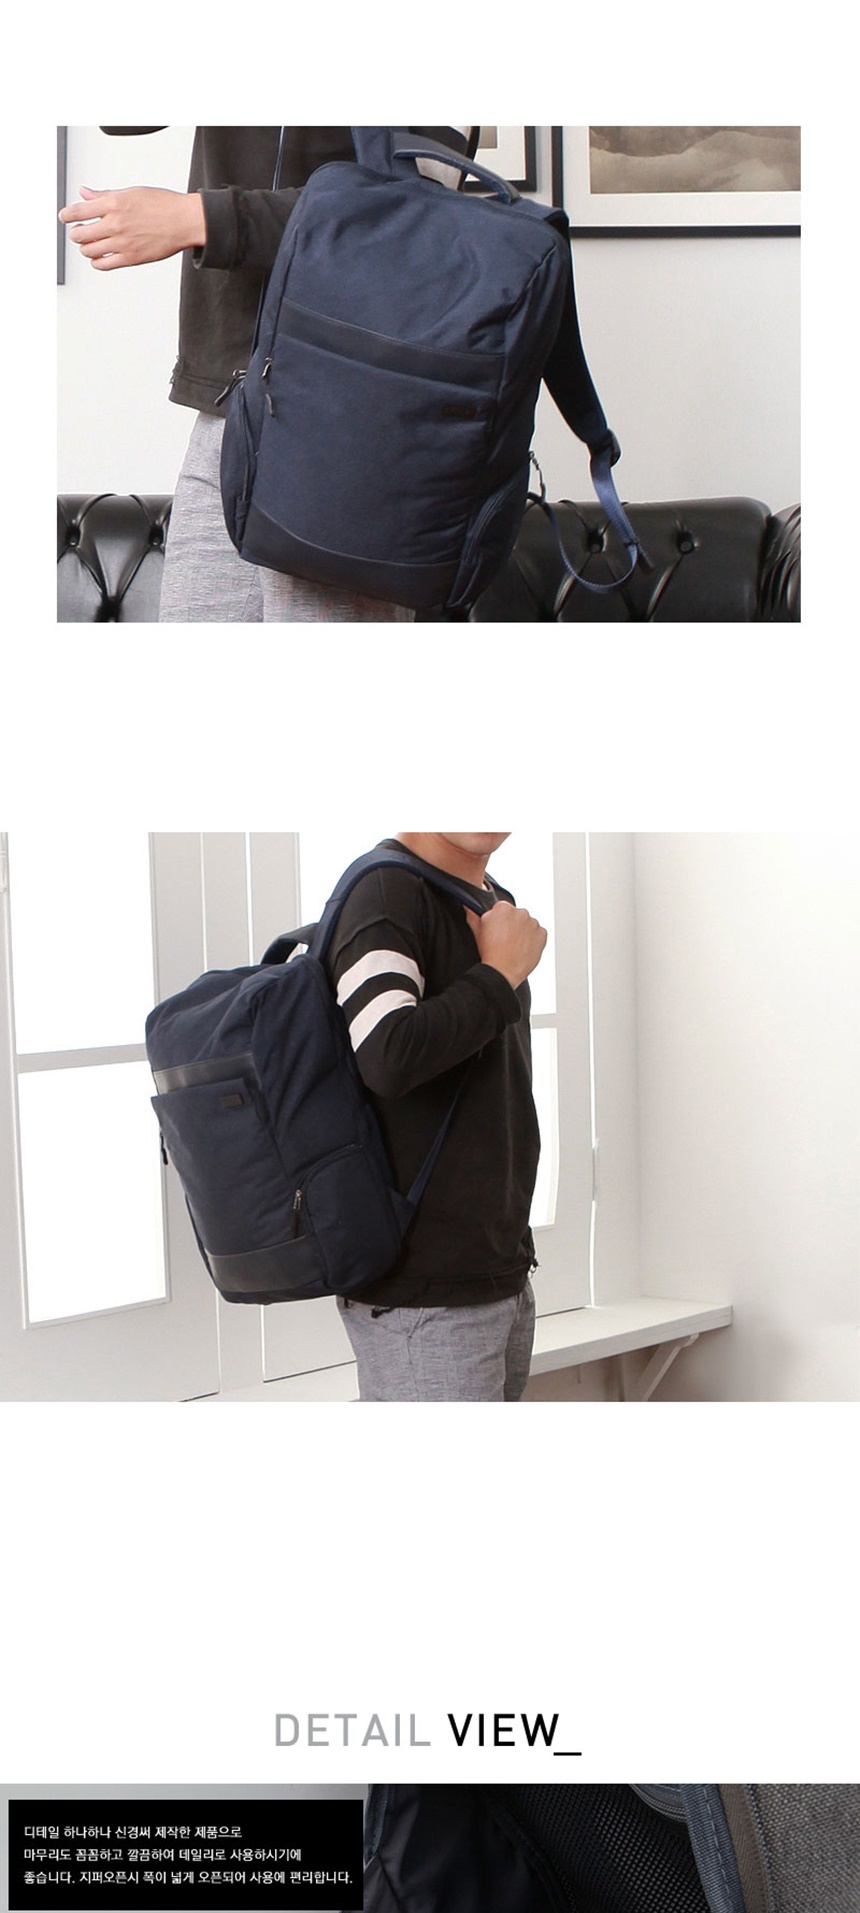 중학생가방,고등학생가방,노트북가방,중학생백팩,고등학생백팩